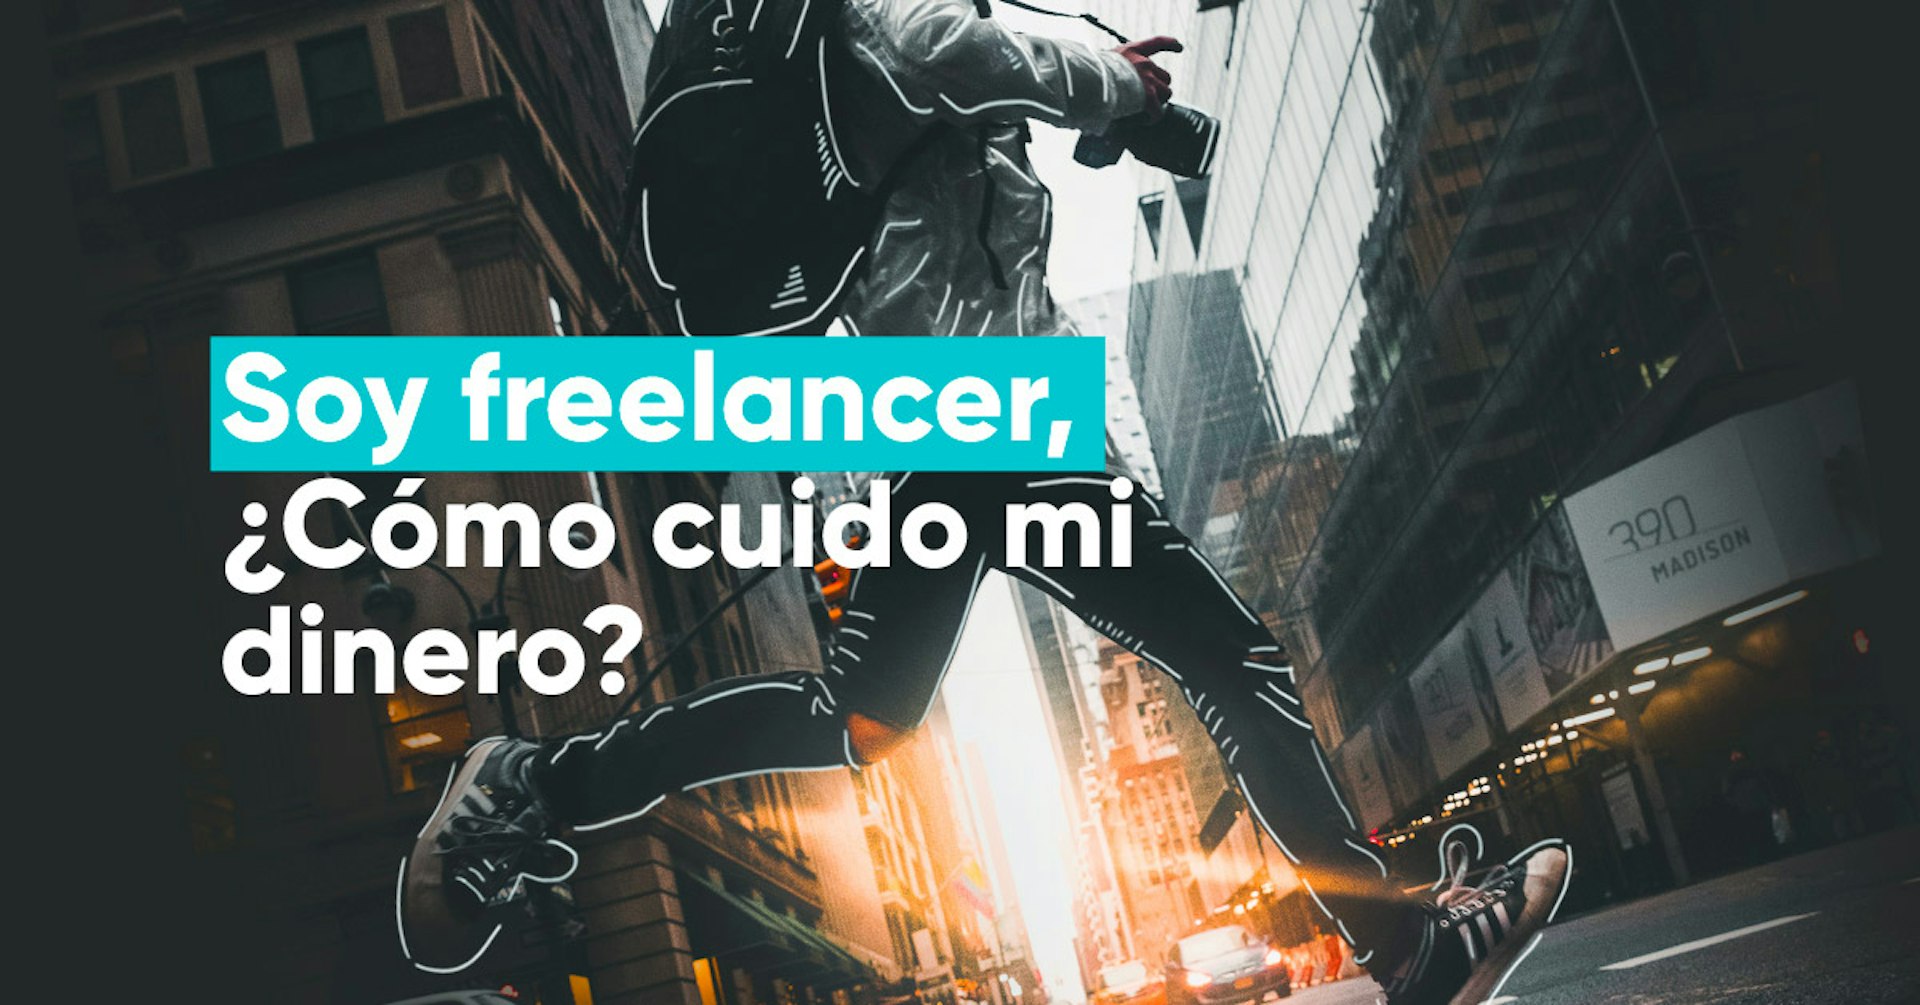 Soy freelancer, ¿cómo cuido mi dinero?